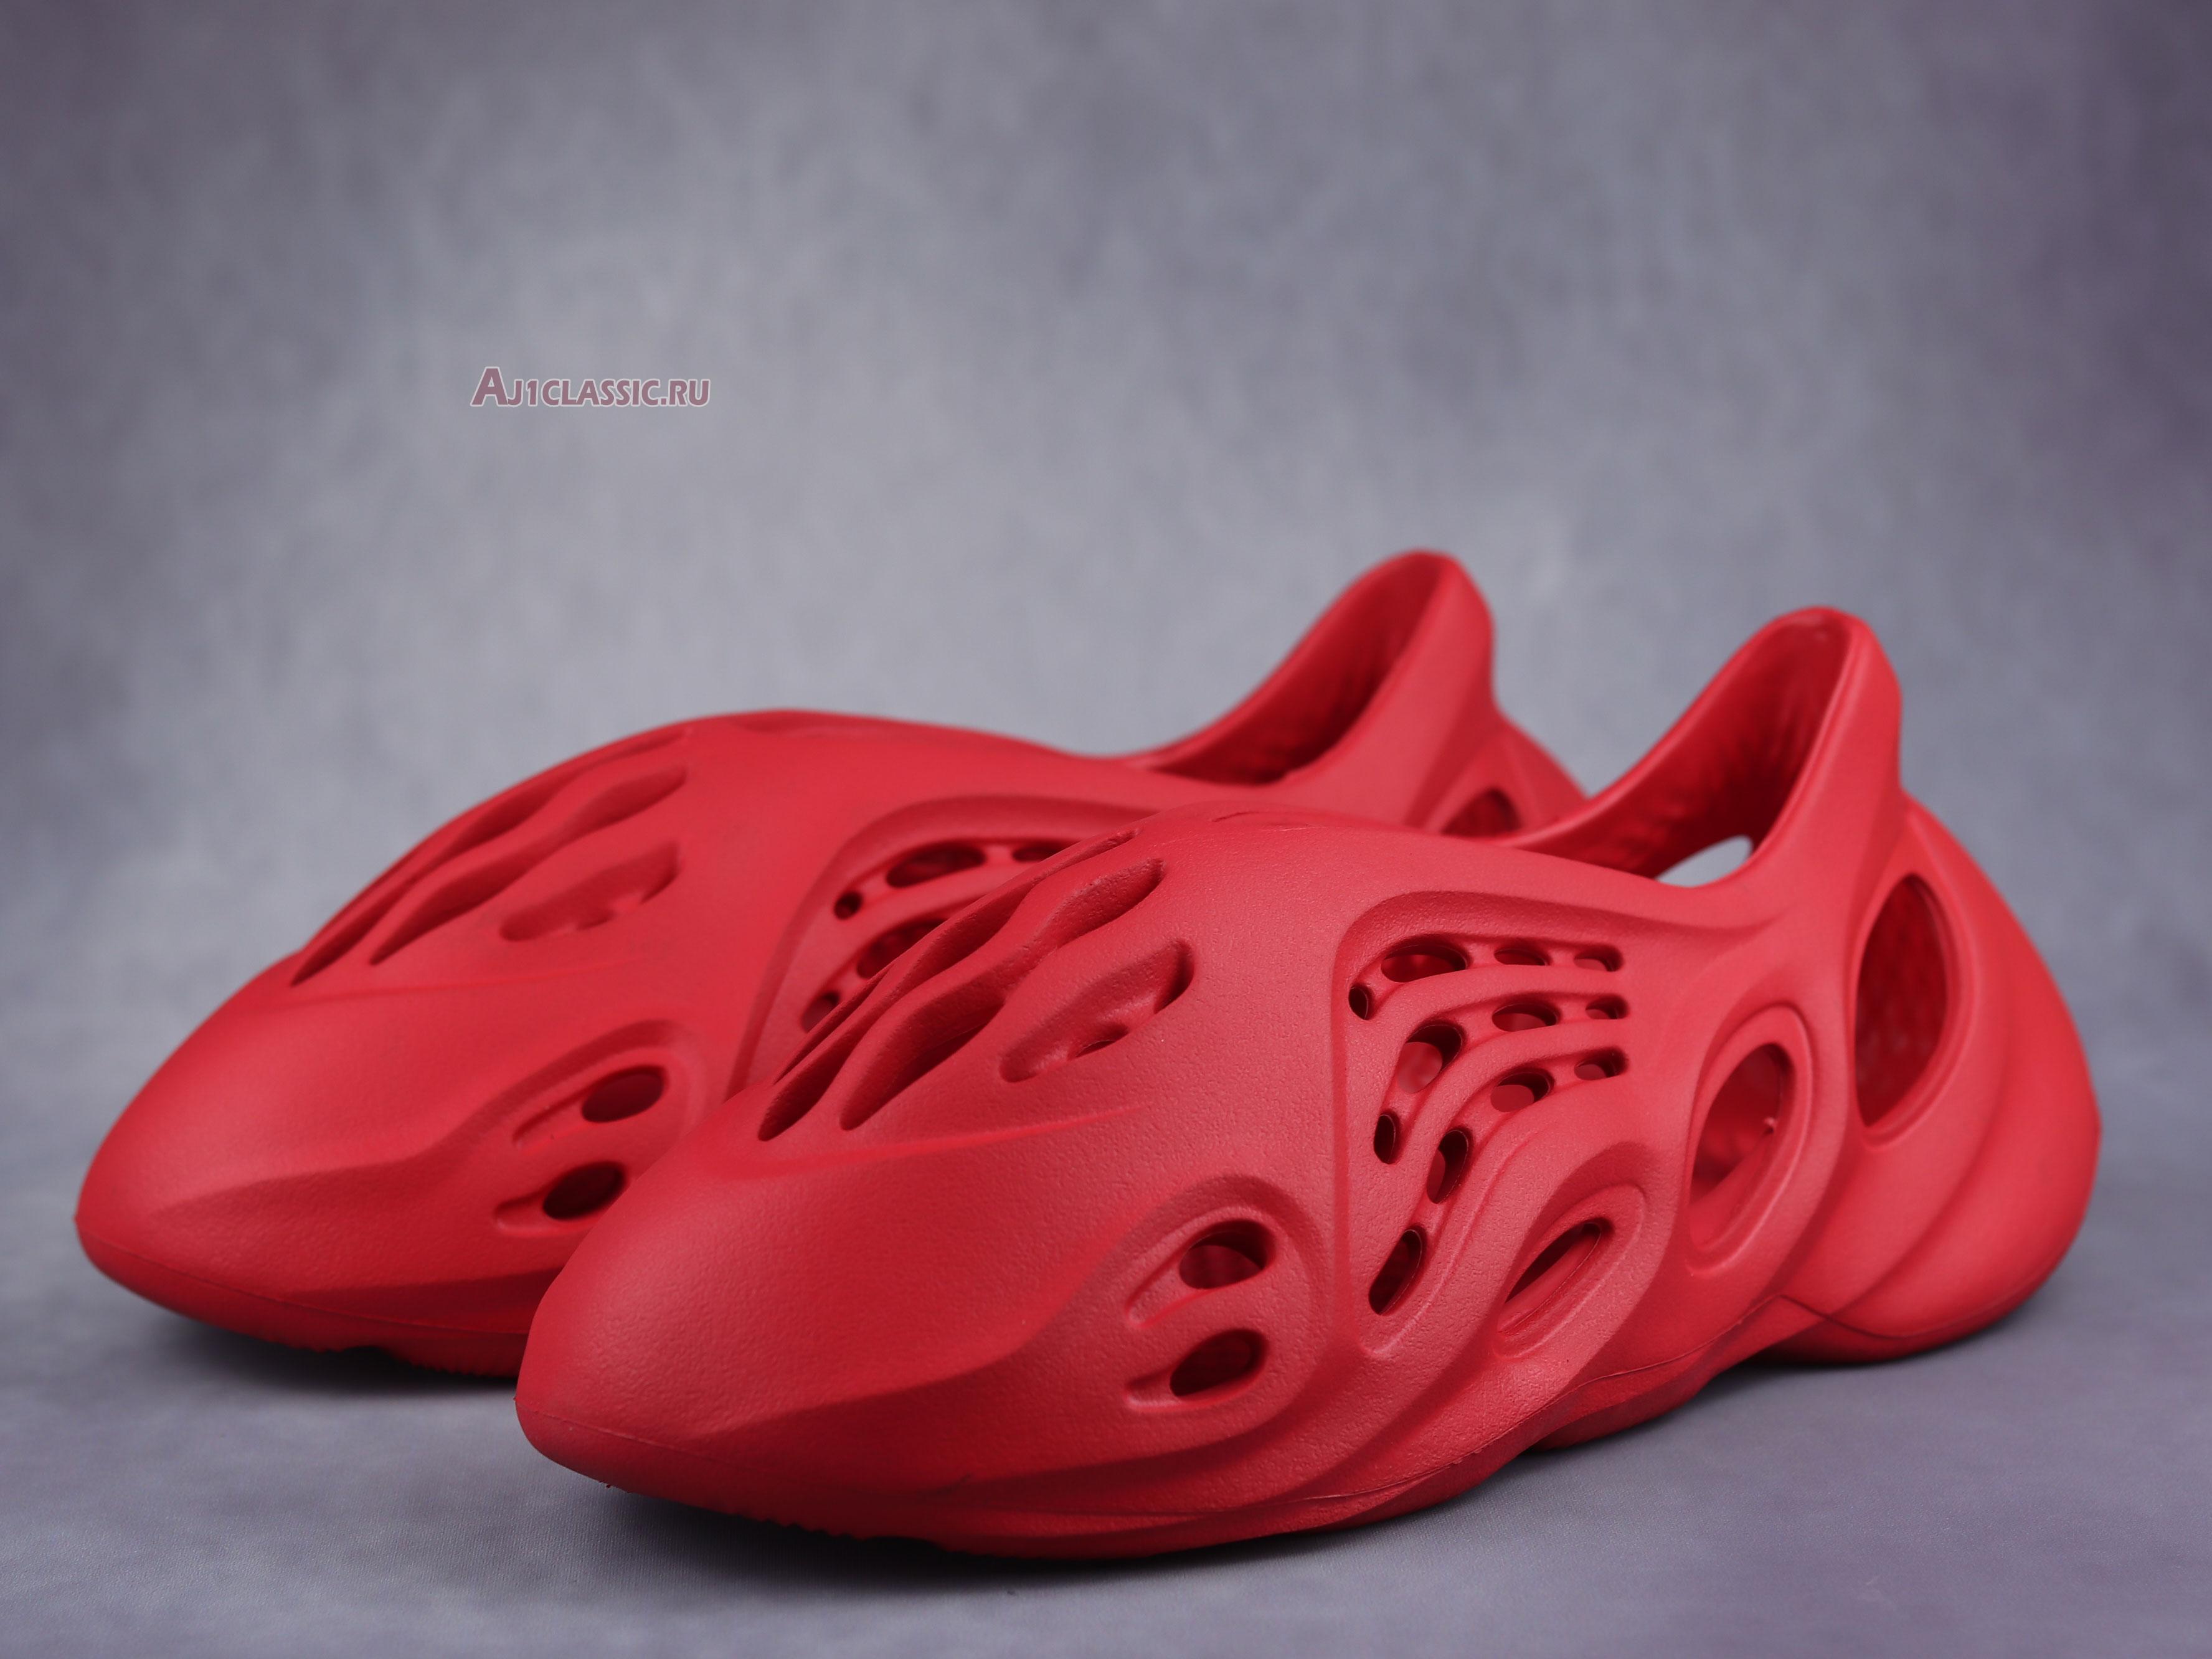 Adidas Yeezy Foam Runner "Vermilion" GW3355